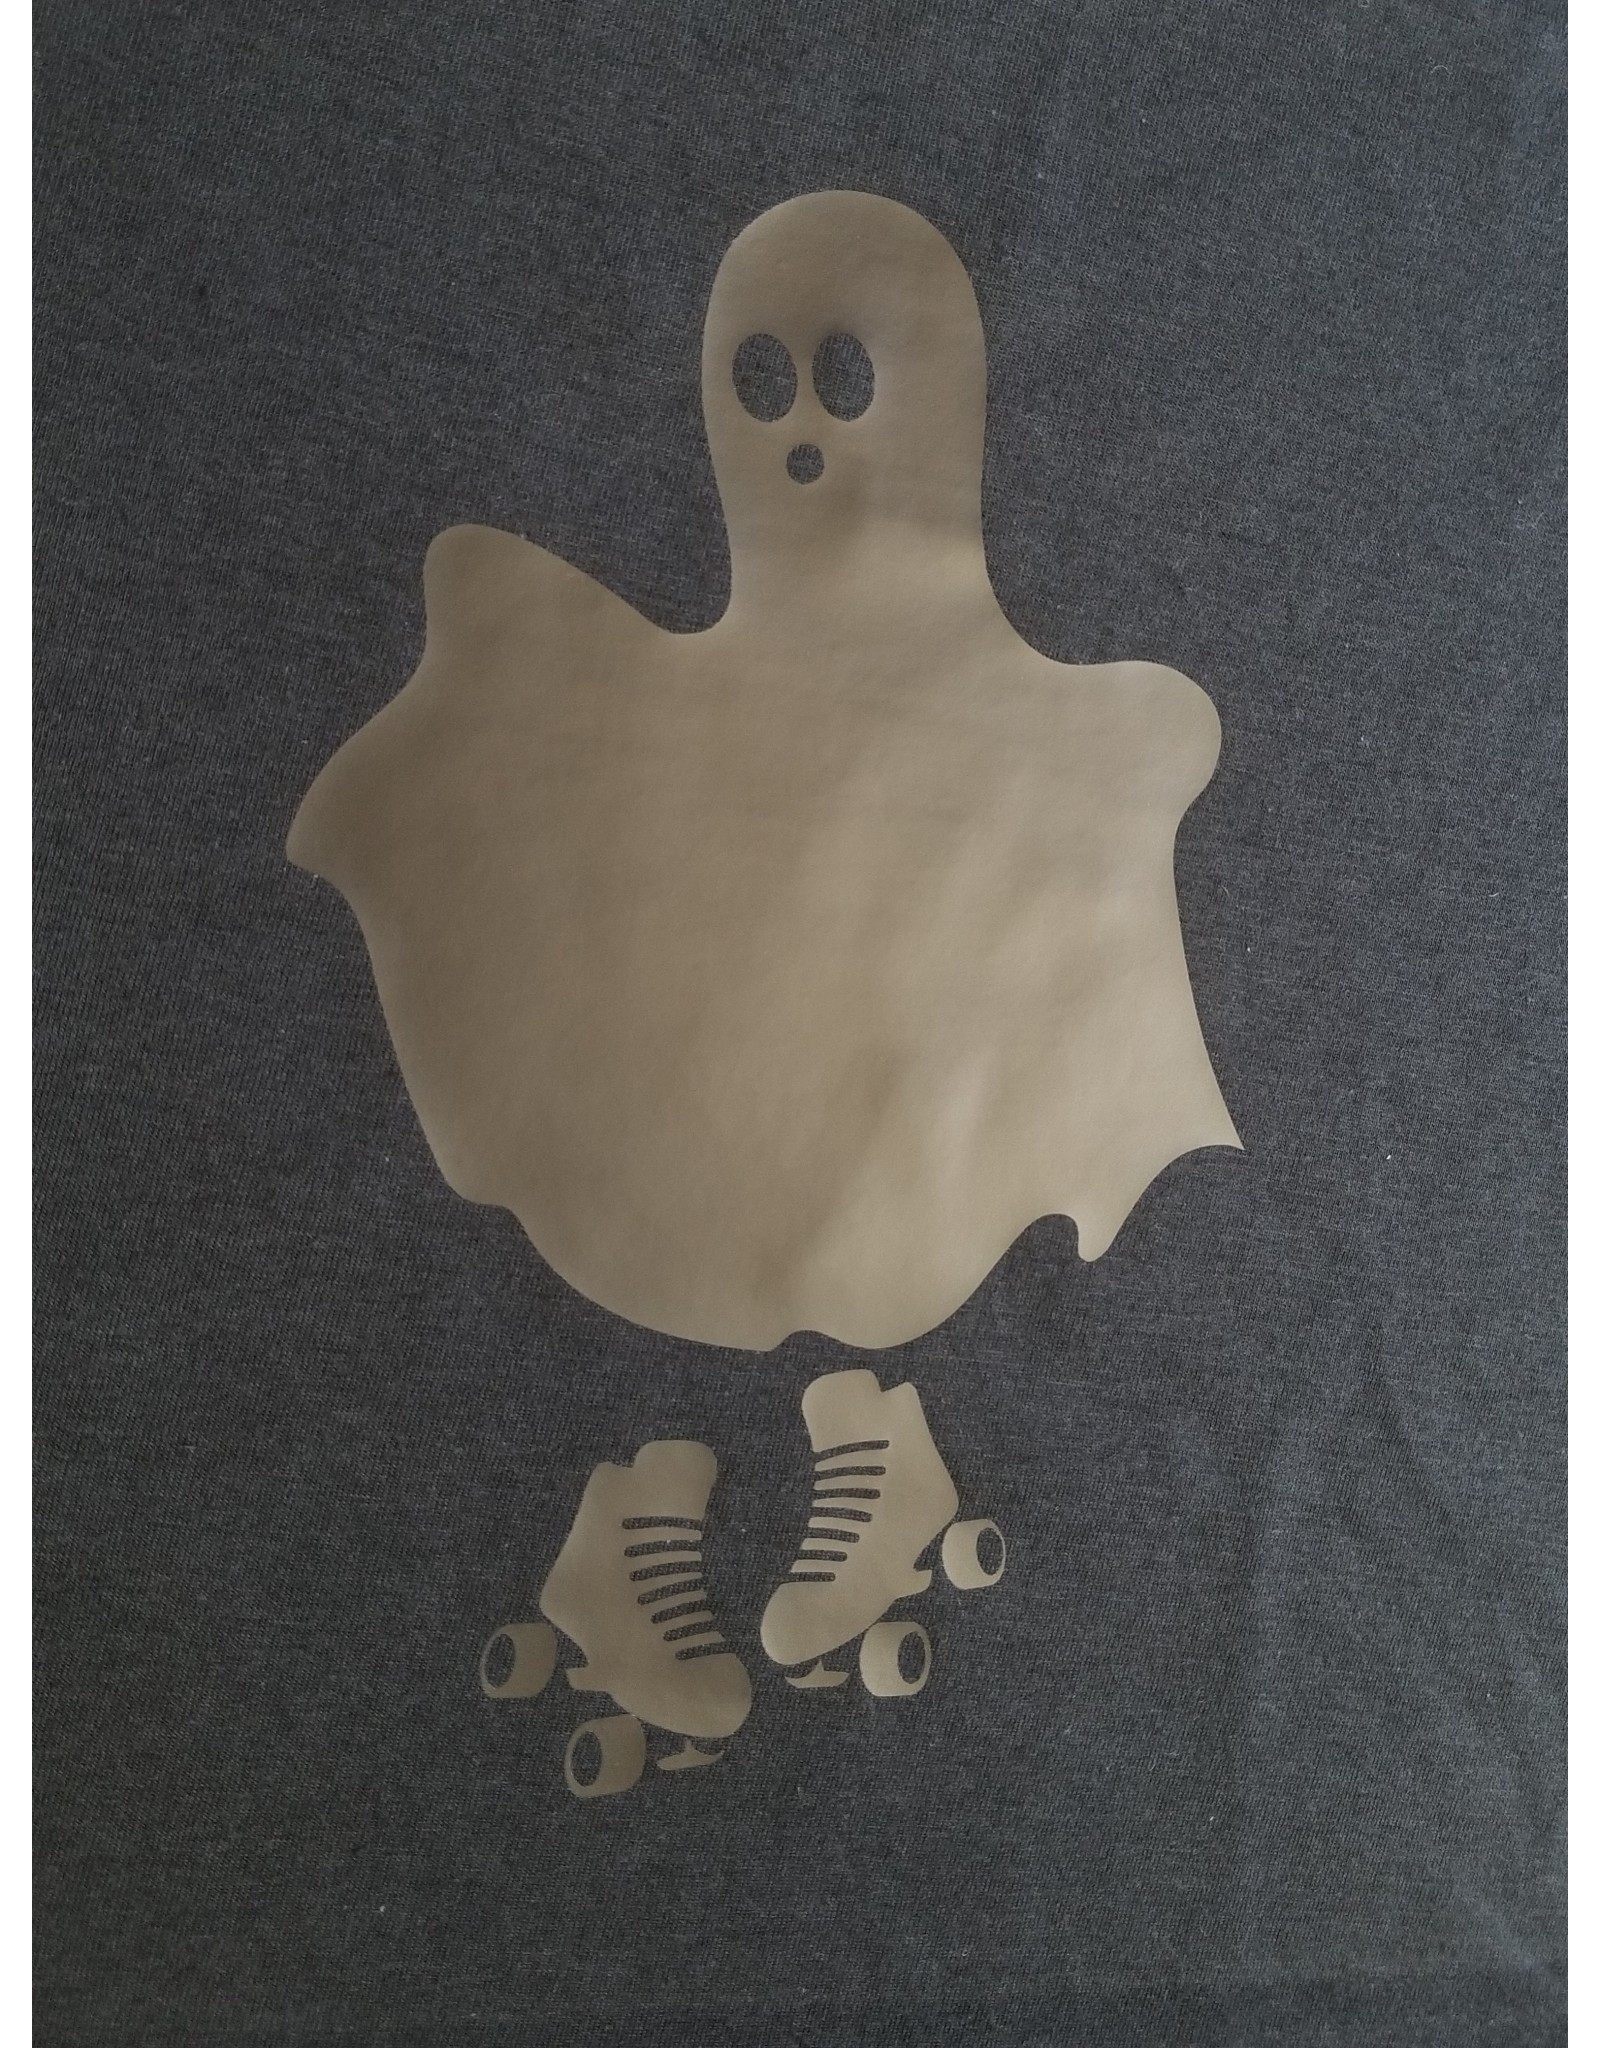 Nerd Ghostie T-shirt Women's